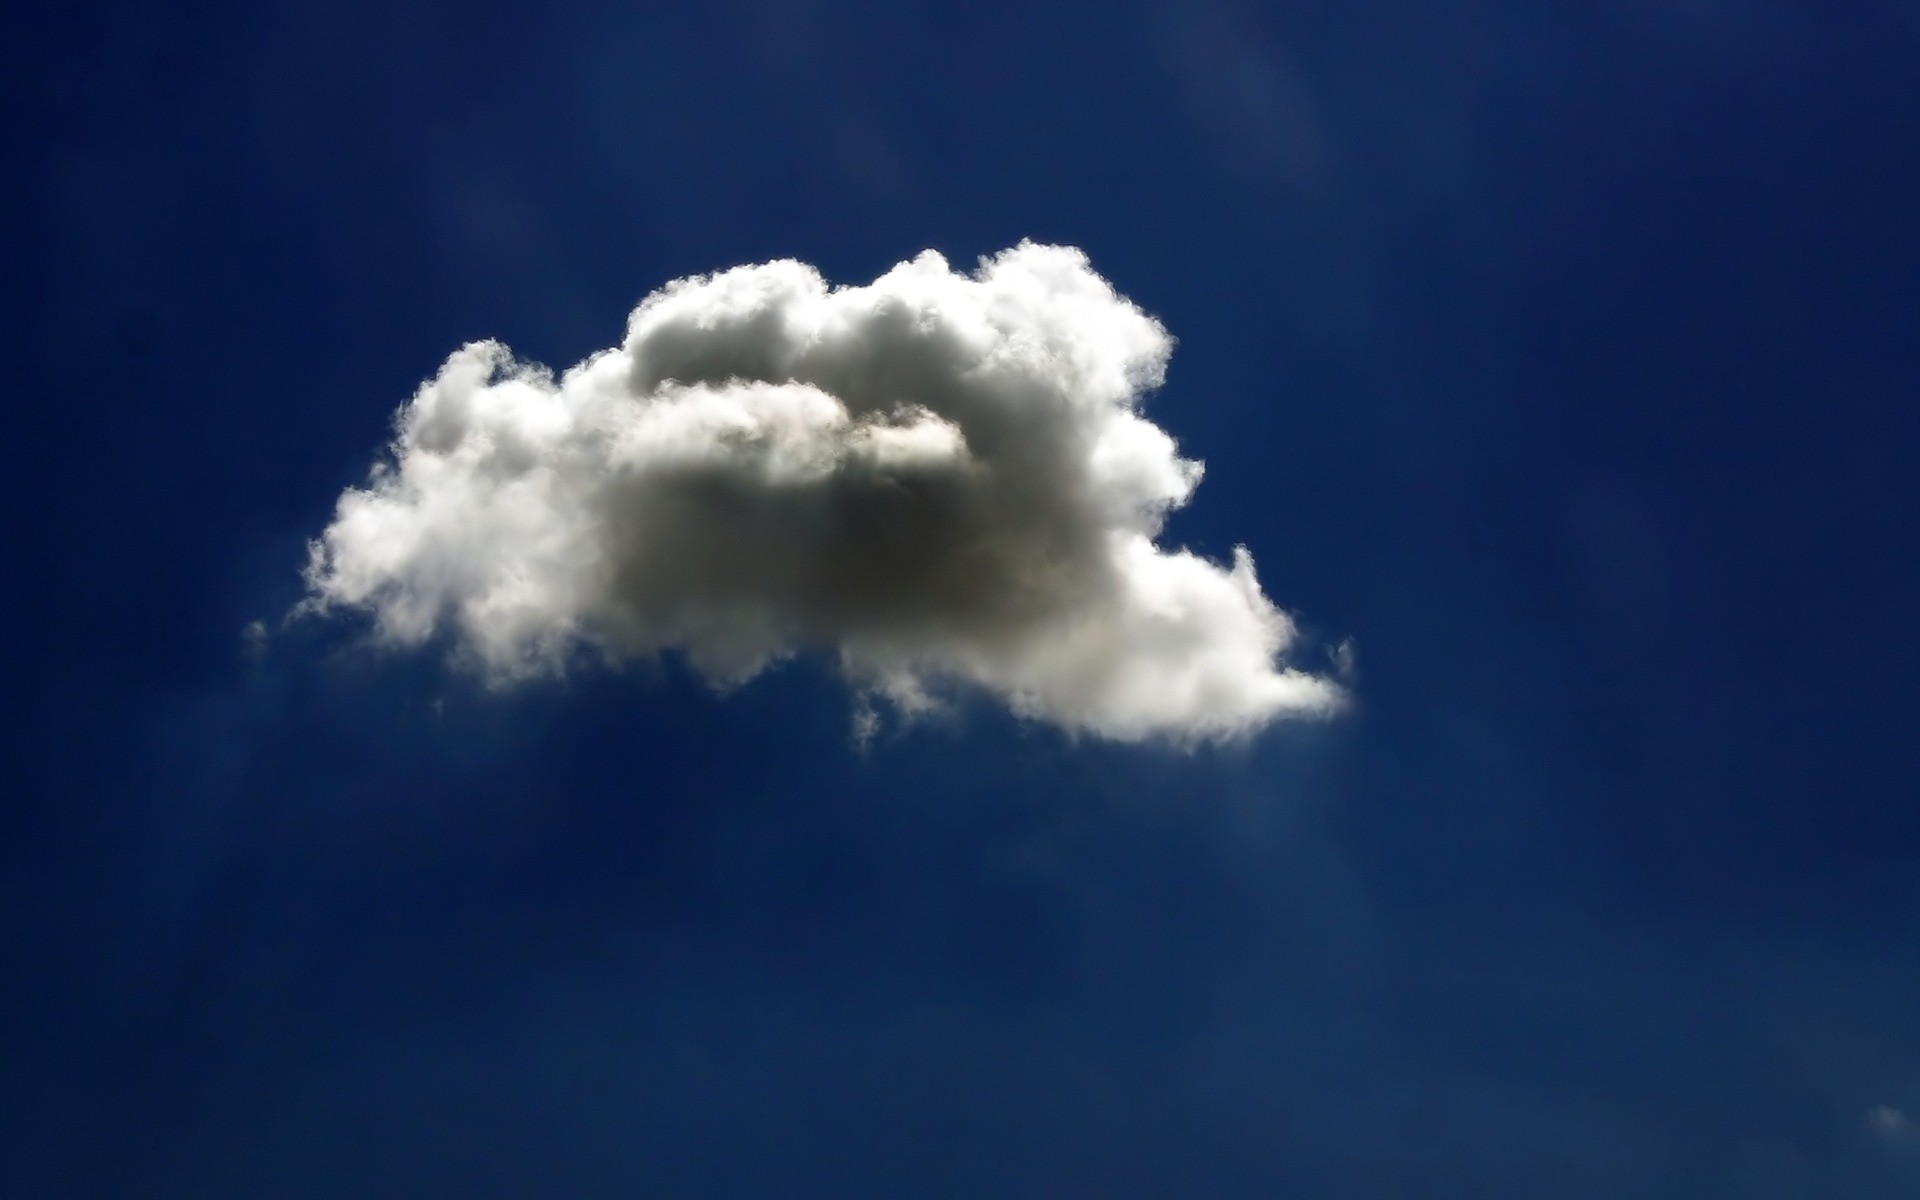 космос небо свет природа дневной свет погода хорошую погоду высокая атмосфера небо пейзаж облако на открытом воздухе одутловатое рабочего стола облачно воздуха солнце метеорология облака